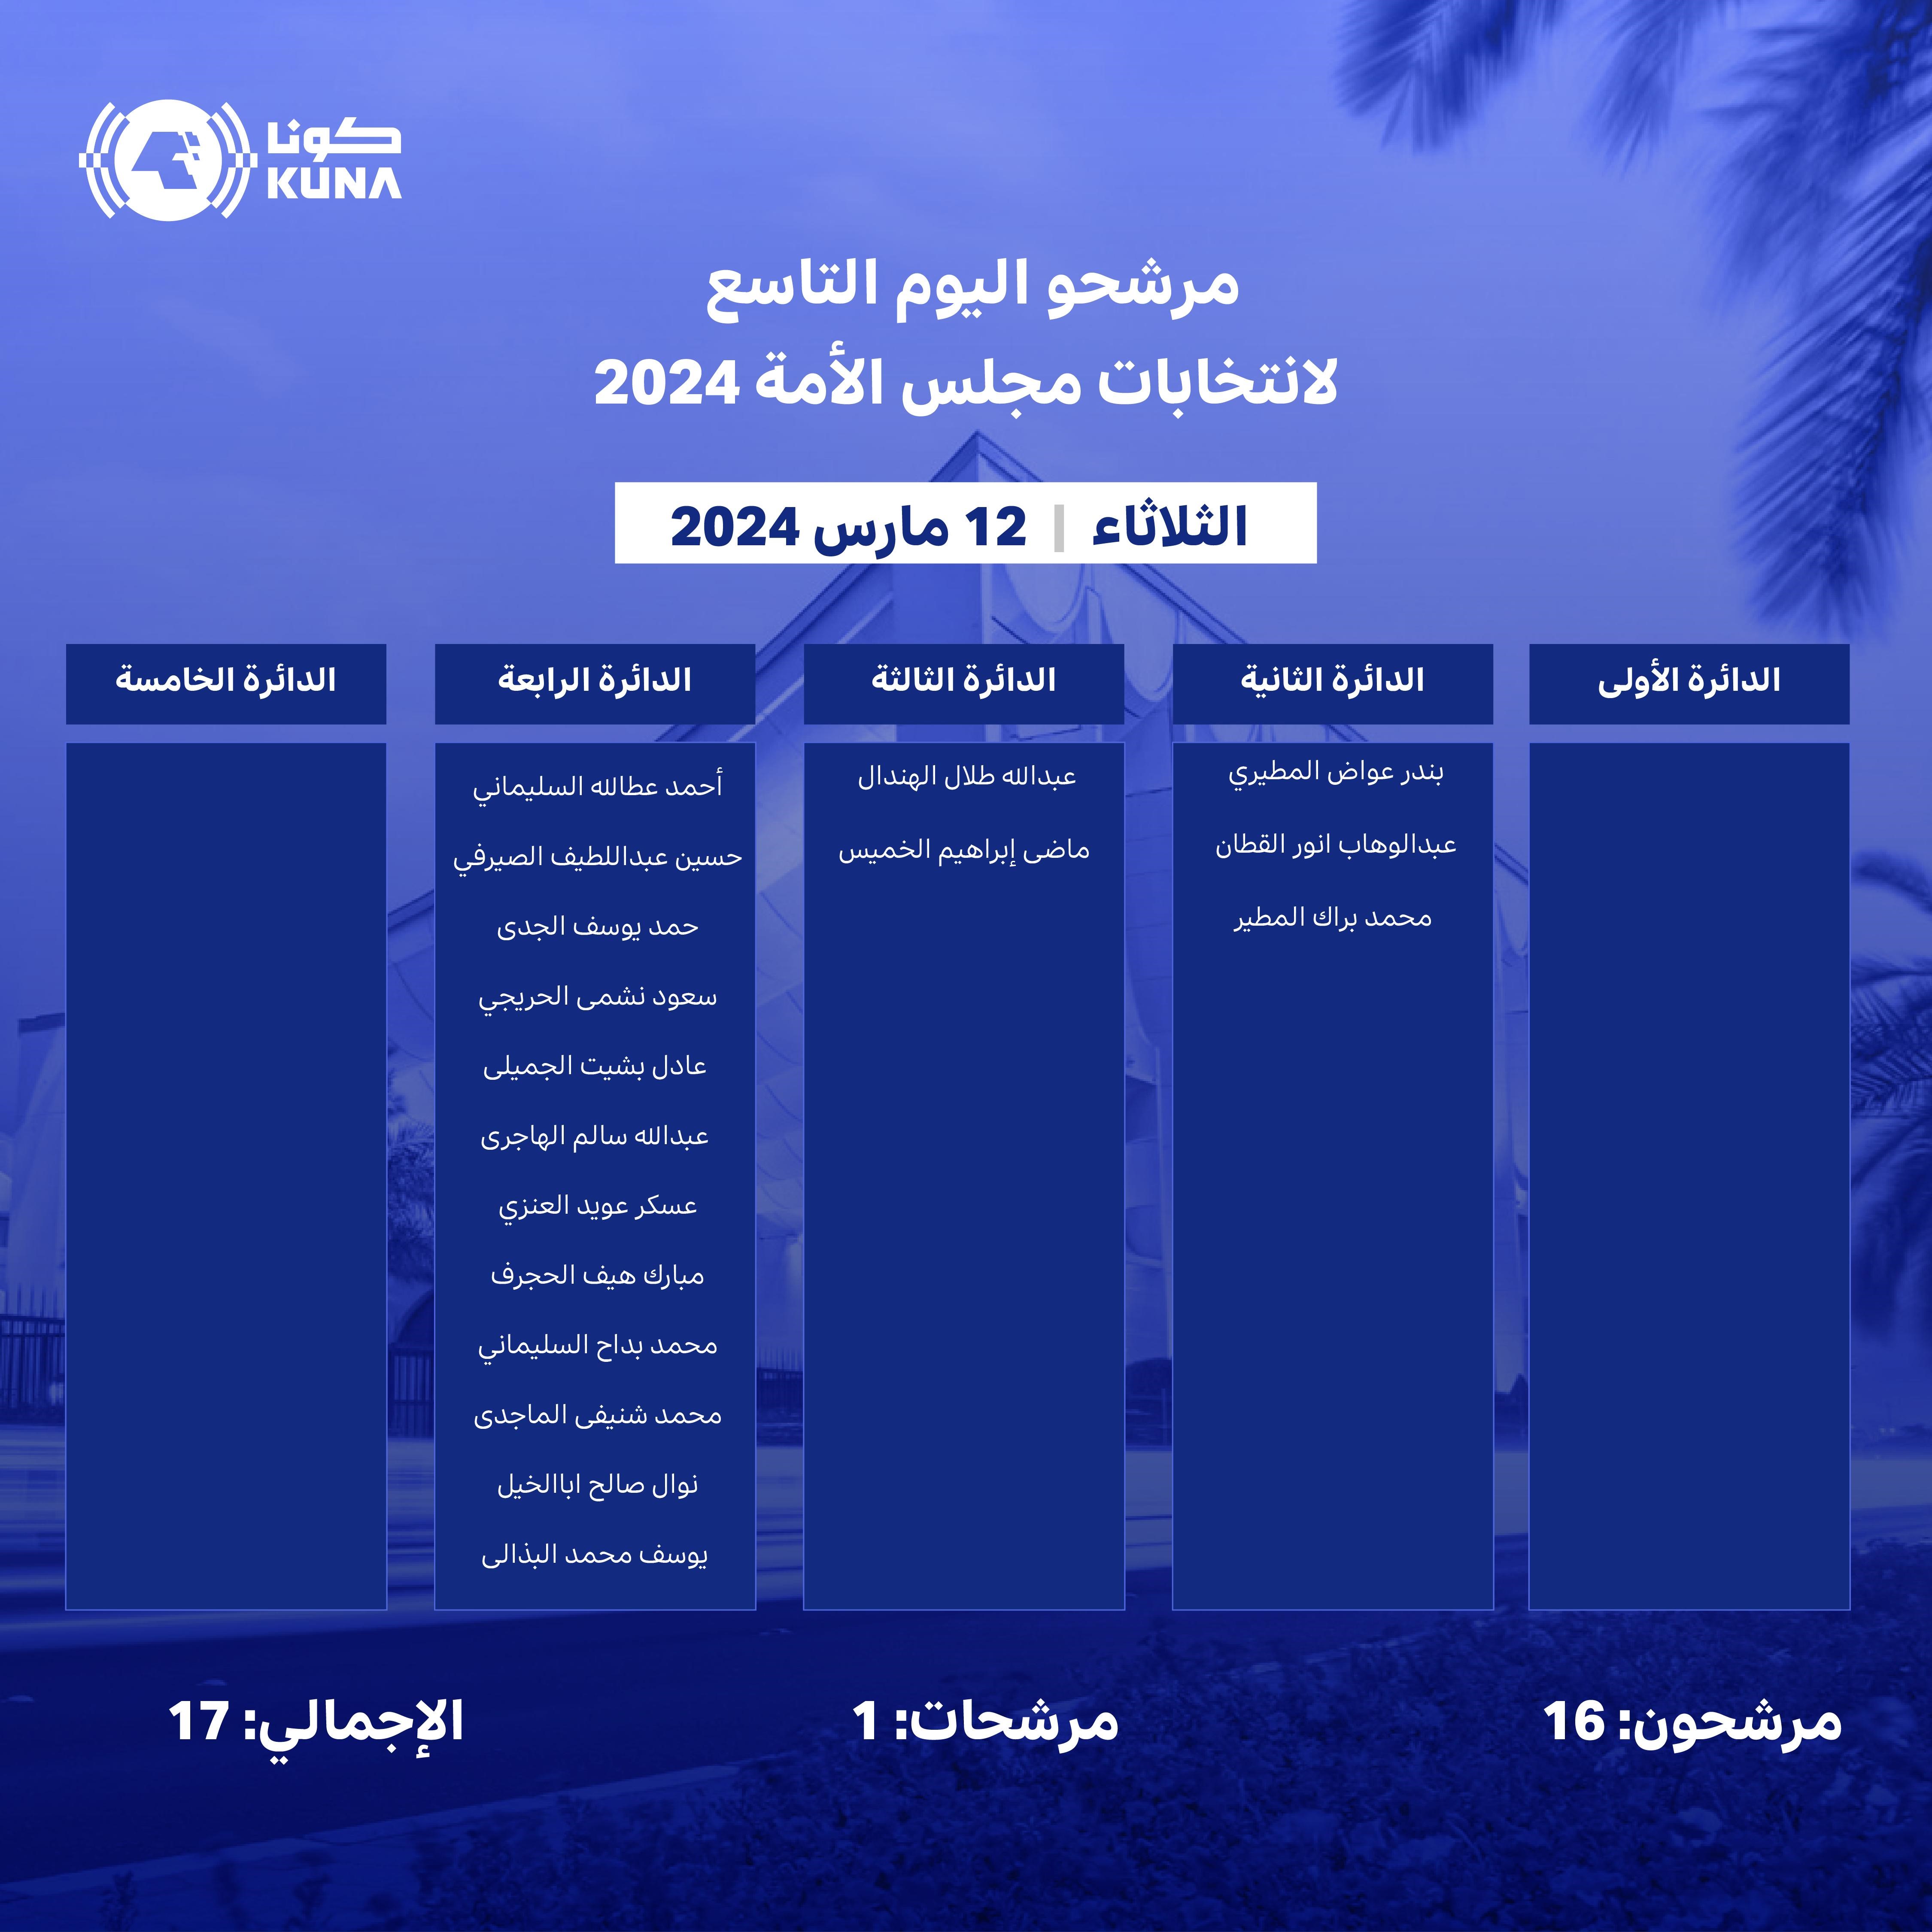 17 مرشحا في اليوم التاسع من فتح باب الترشح لانتخابات مجلس الأمة (أمة 2024)                                                                                                                                                                                